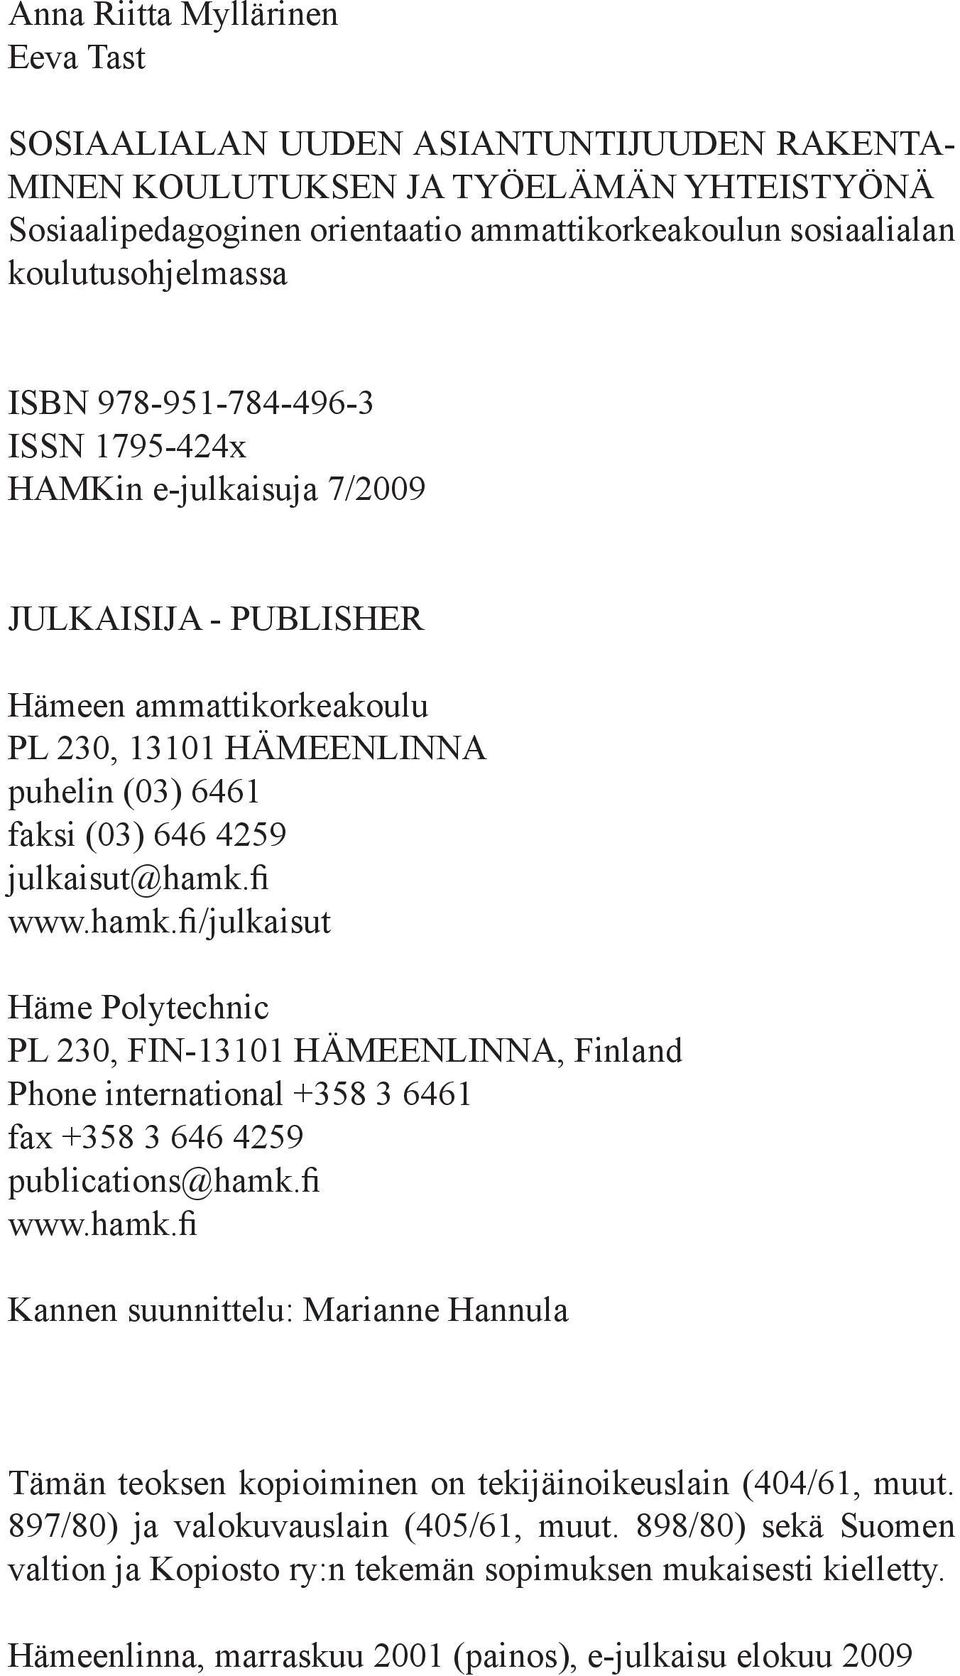 julkaisut@hamk.fi www.hamk.fi/julkaisut Häme Polytechnic PL 230, FIN-13101 HÄMEENLINNA, Finland Phone international +358 3 6461 fax +358 3 646 4259 publications@hamk.fi www.hamk.fi Kannen suunnittelu: Marianne Hannula Tämän teoksen kopioiminen on tekijäinoikeuslain (404/61, muut.